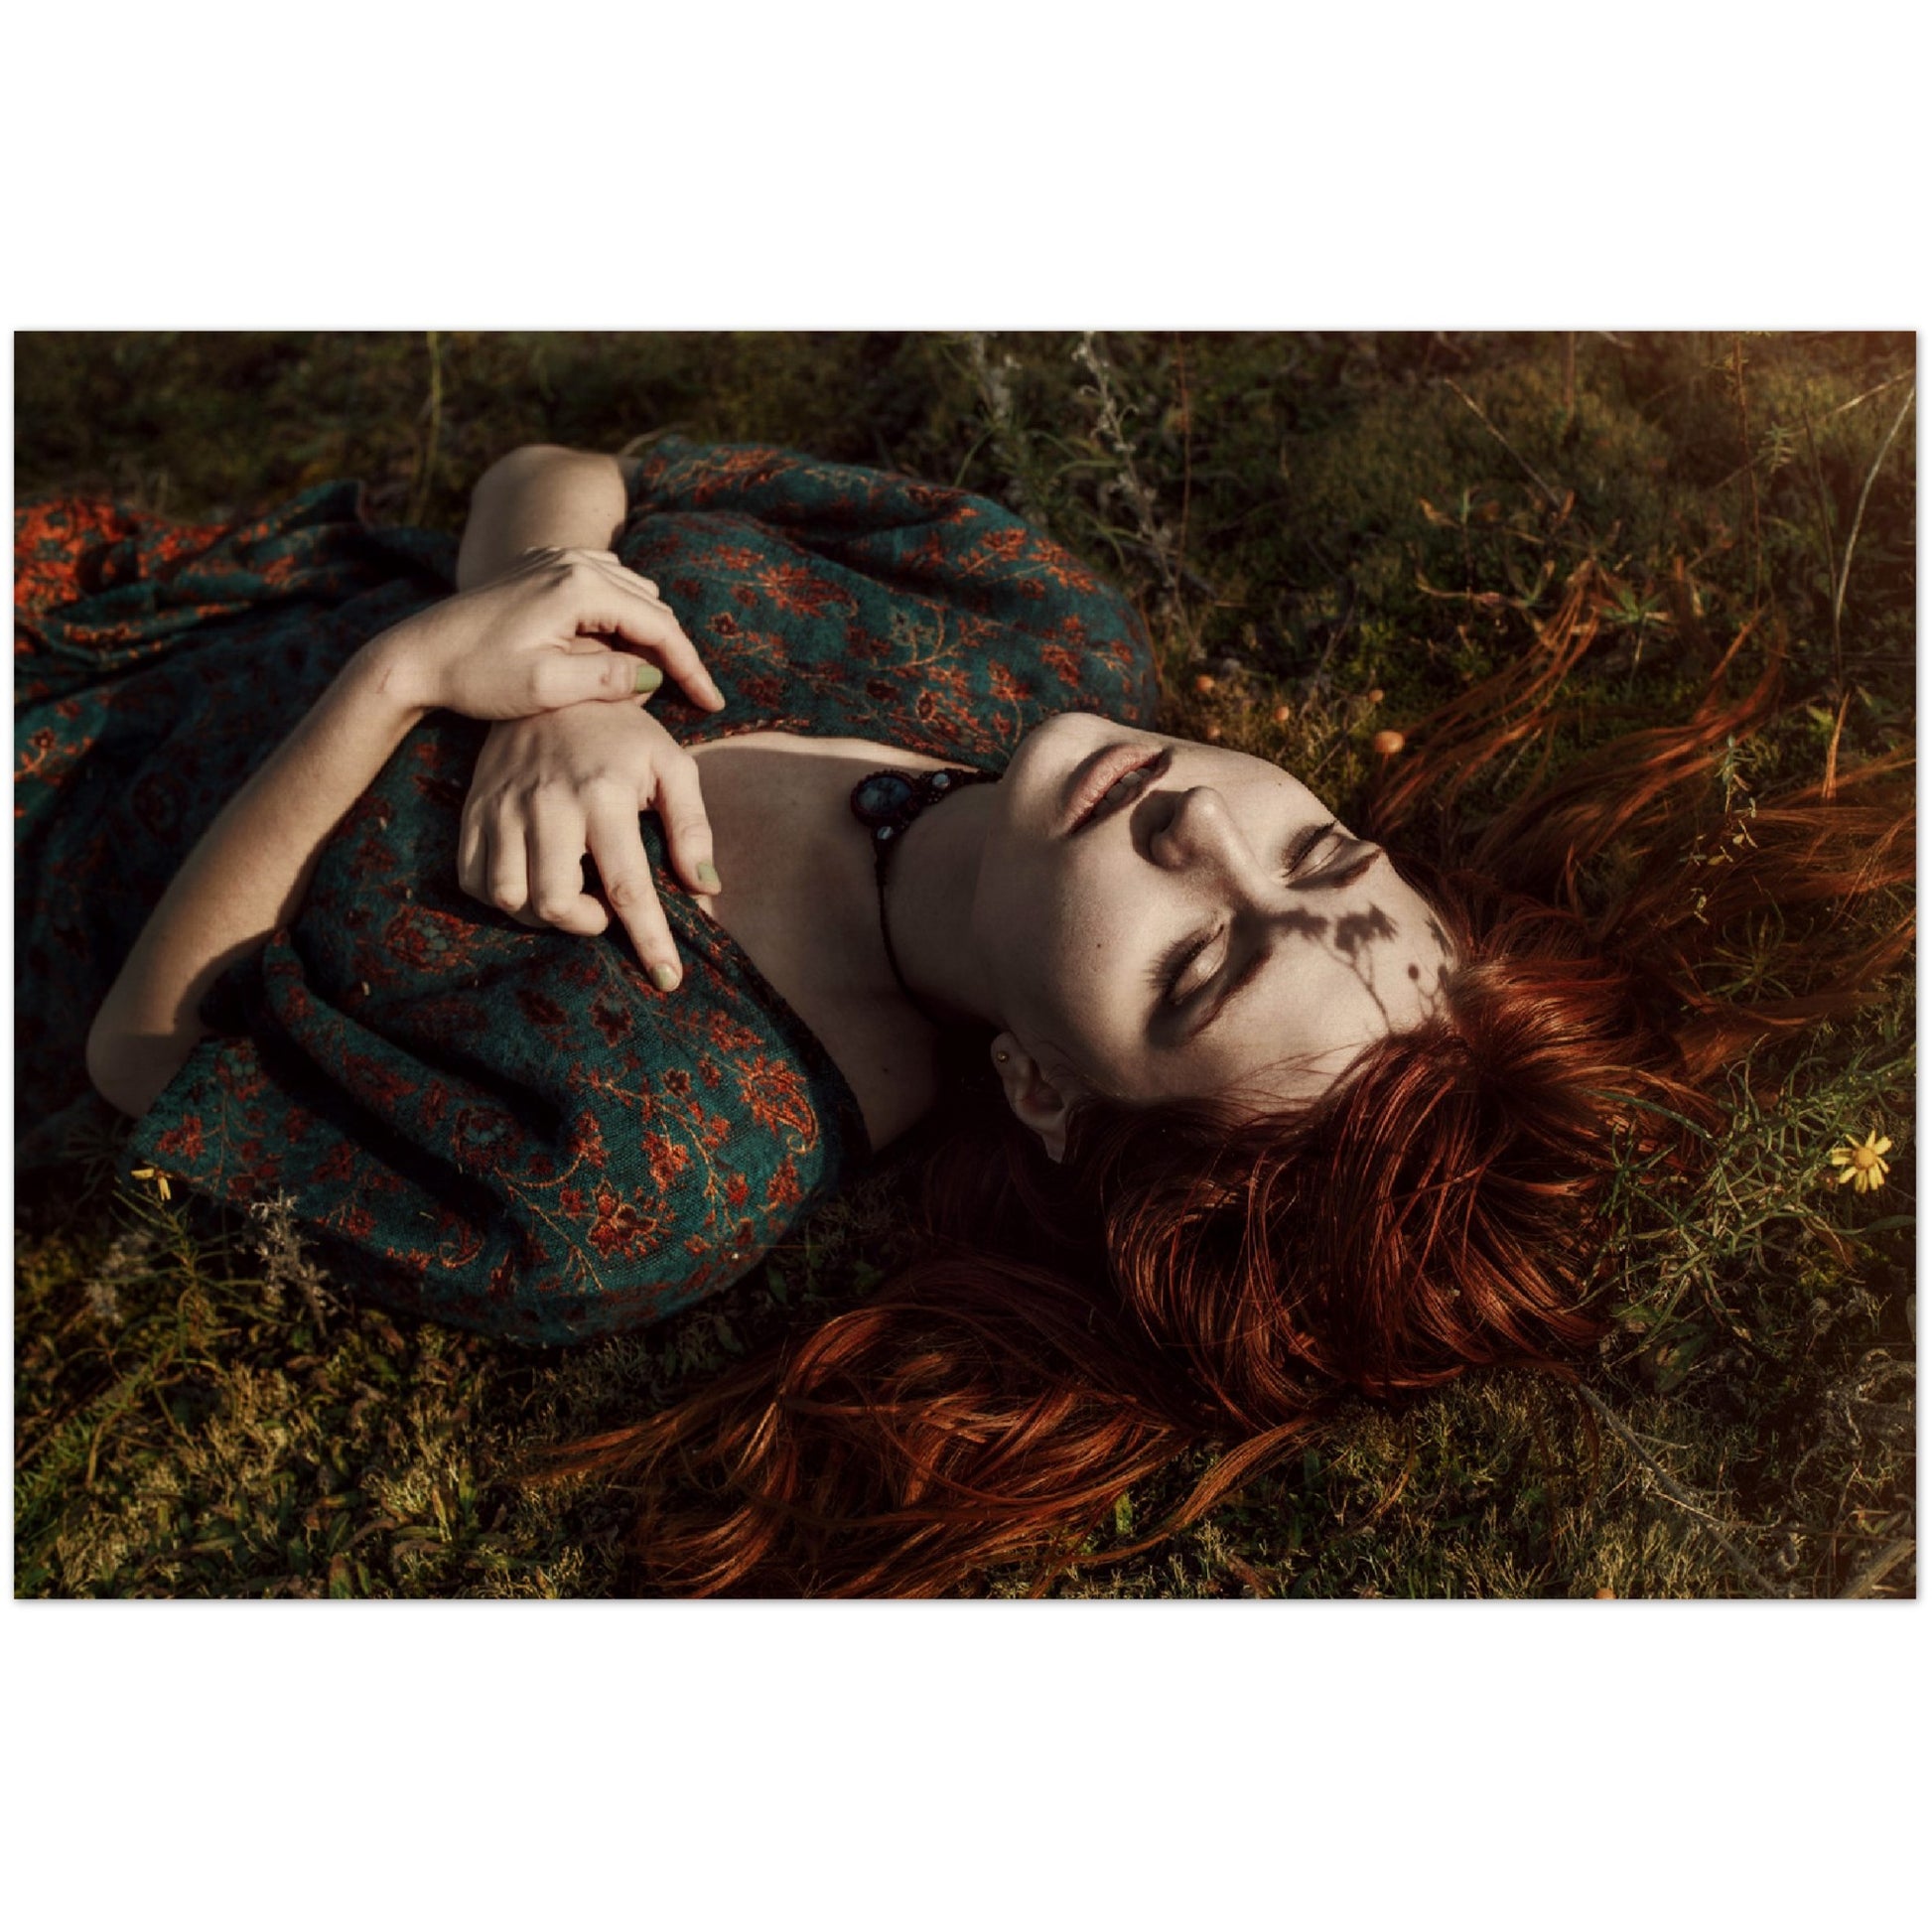 Eine Frau liegt im Gras und hält „My Place for Eternity“ – Mid June Photography – Kunstdruck auf Holz, ein einzigartiges Kunstwerk, das als Merchandise erhältlich ist.